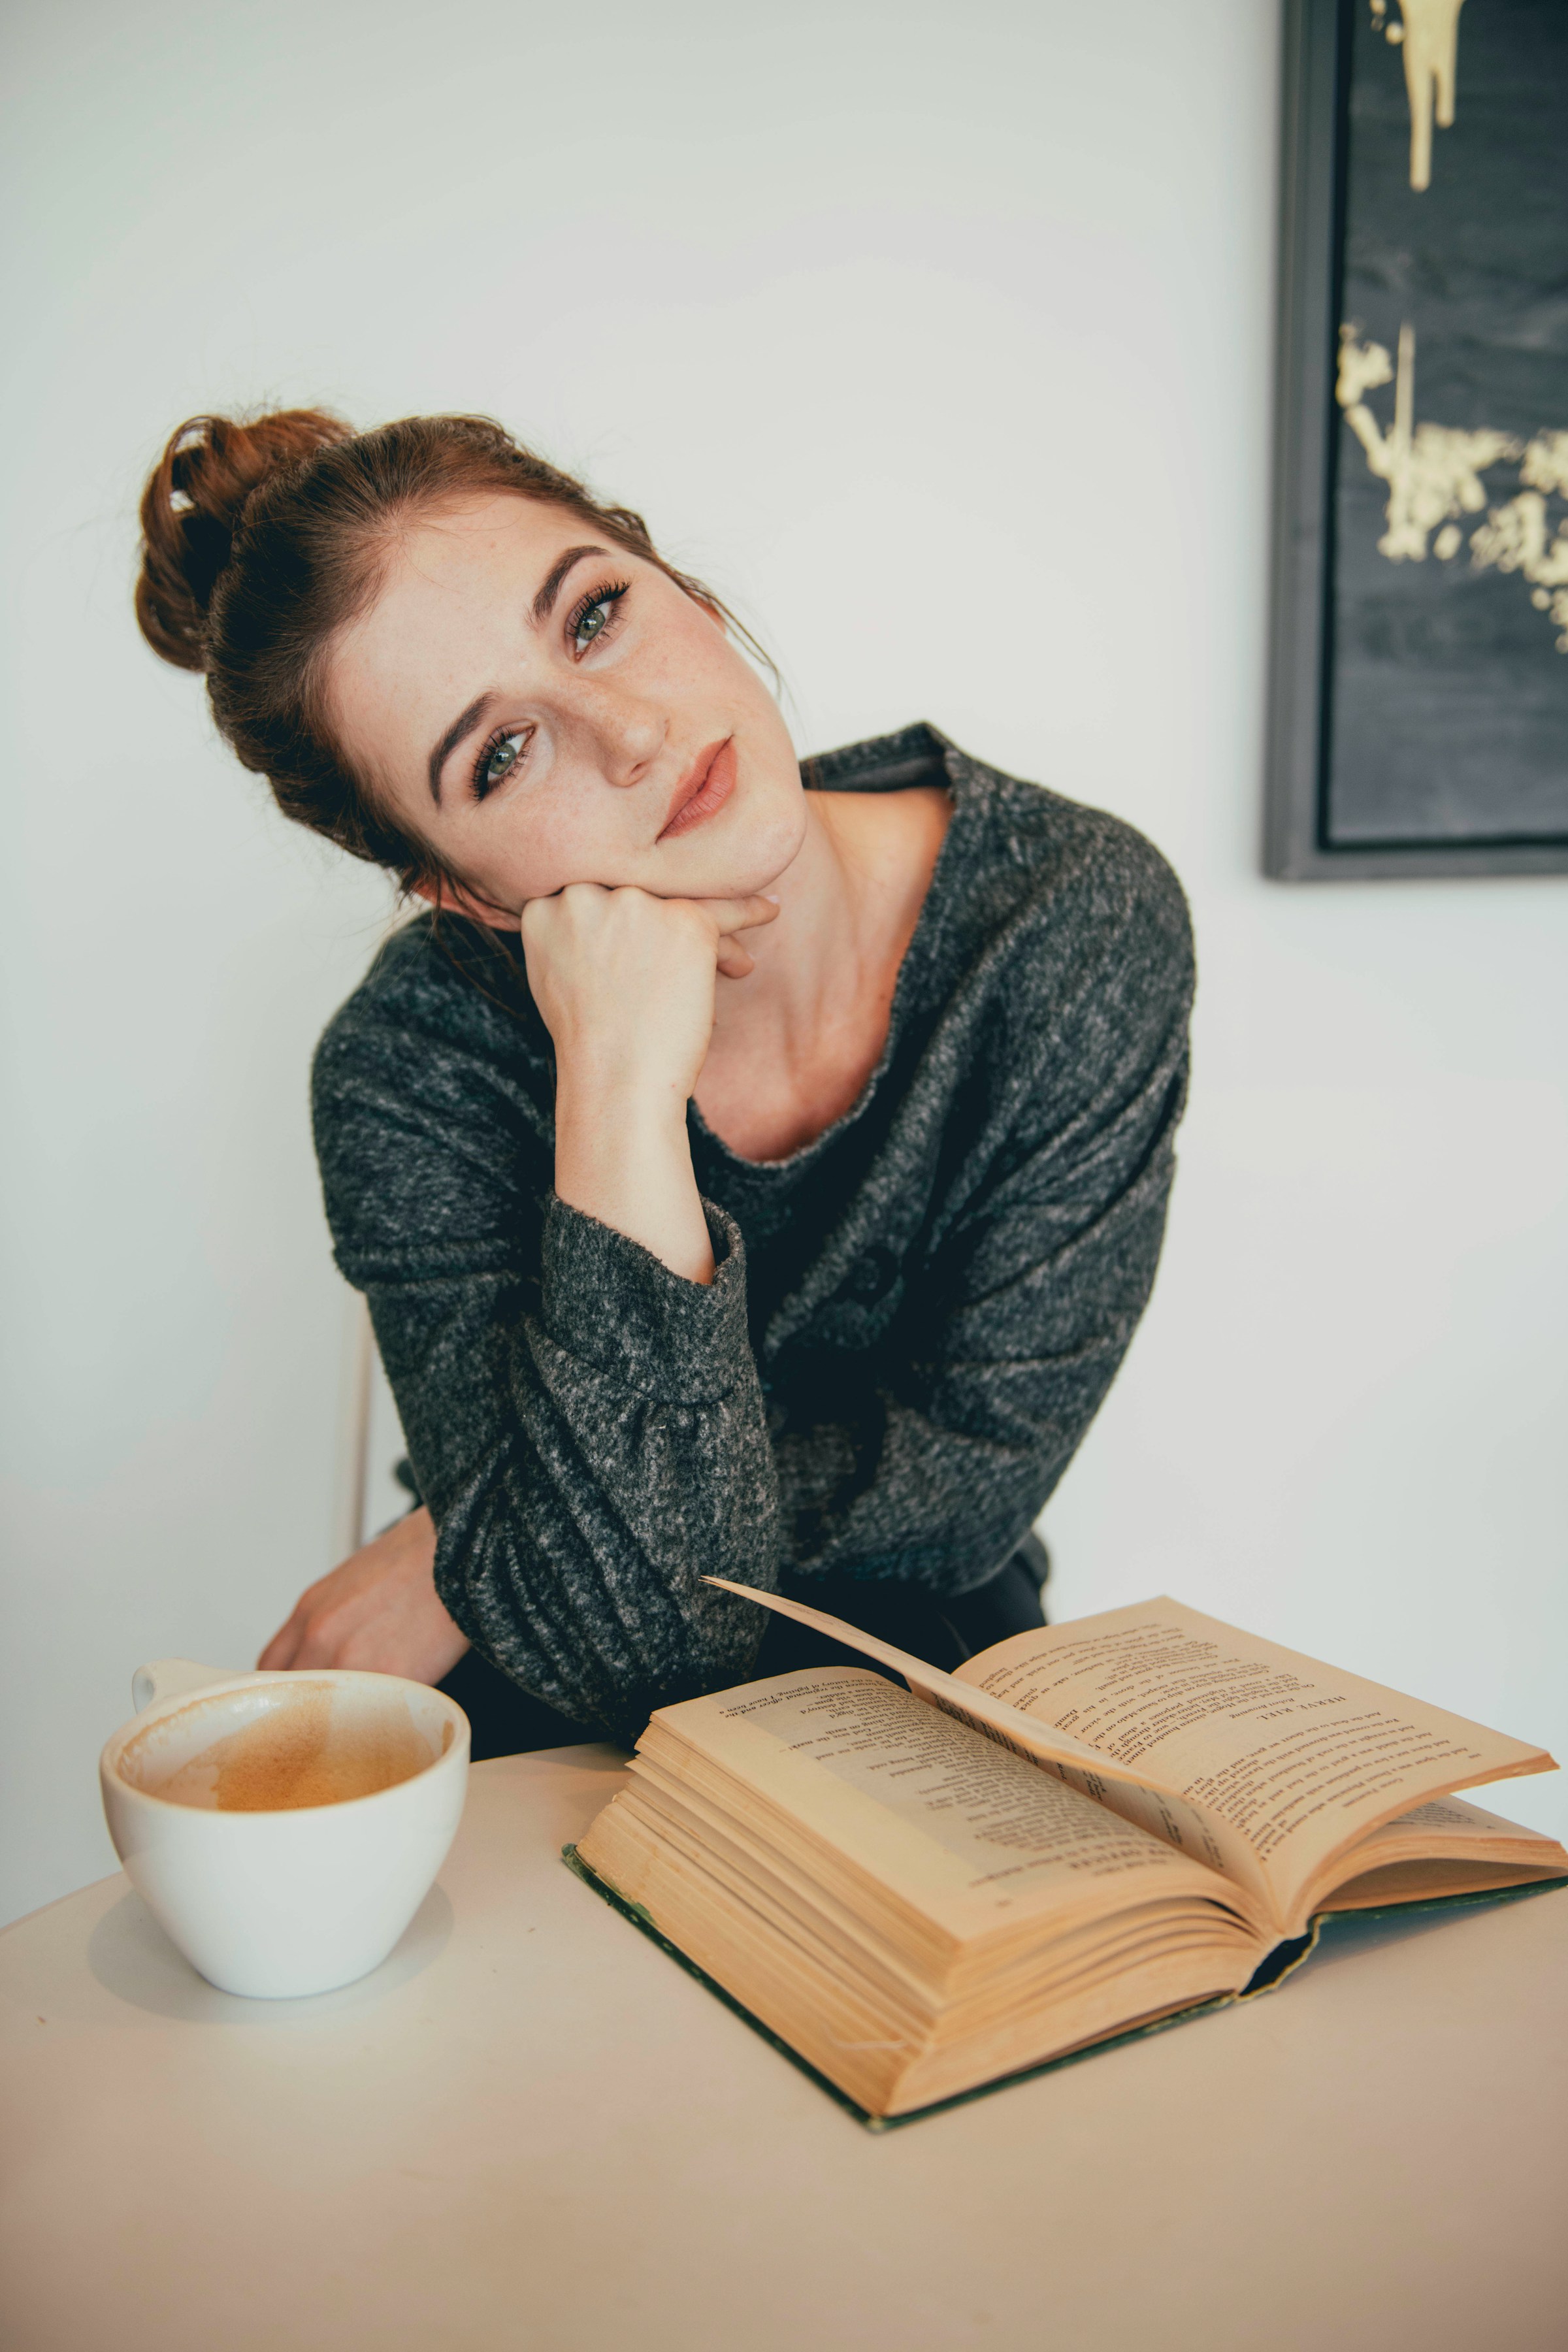 Una mujer sentada junto a una taza de café y un libro abierto | Fuente: Unsplash